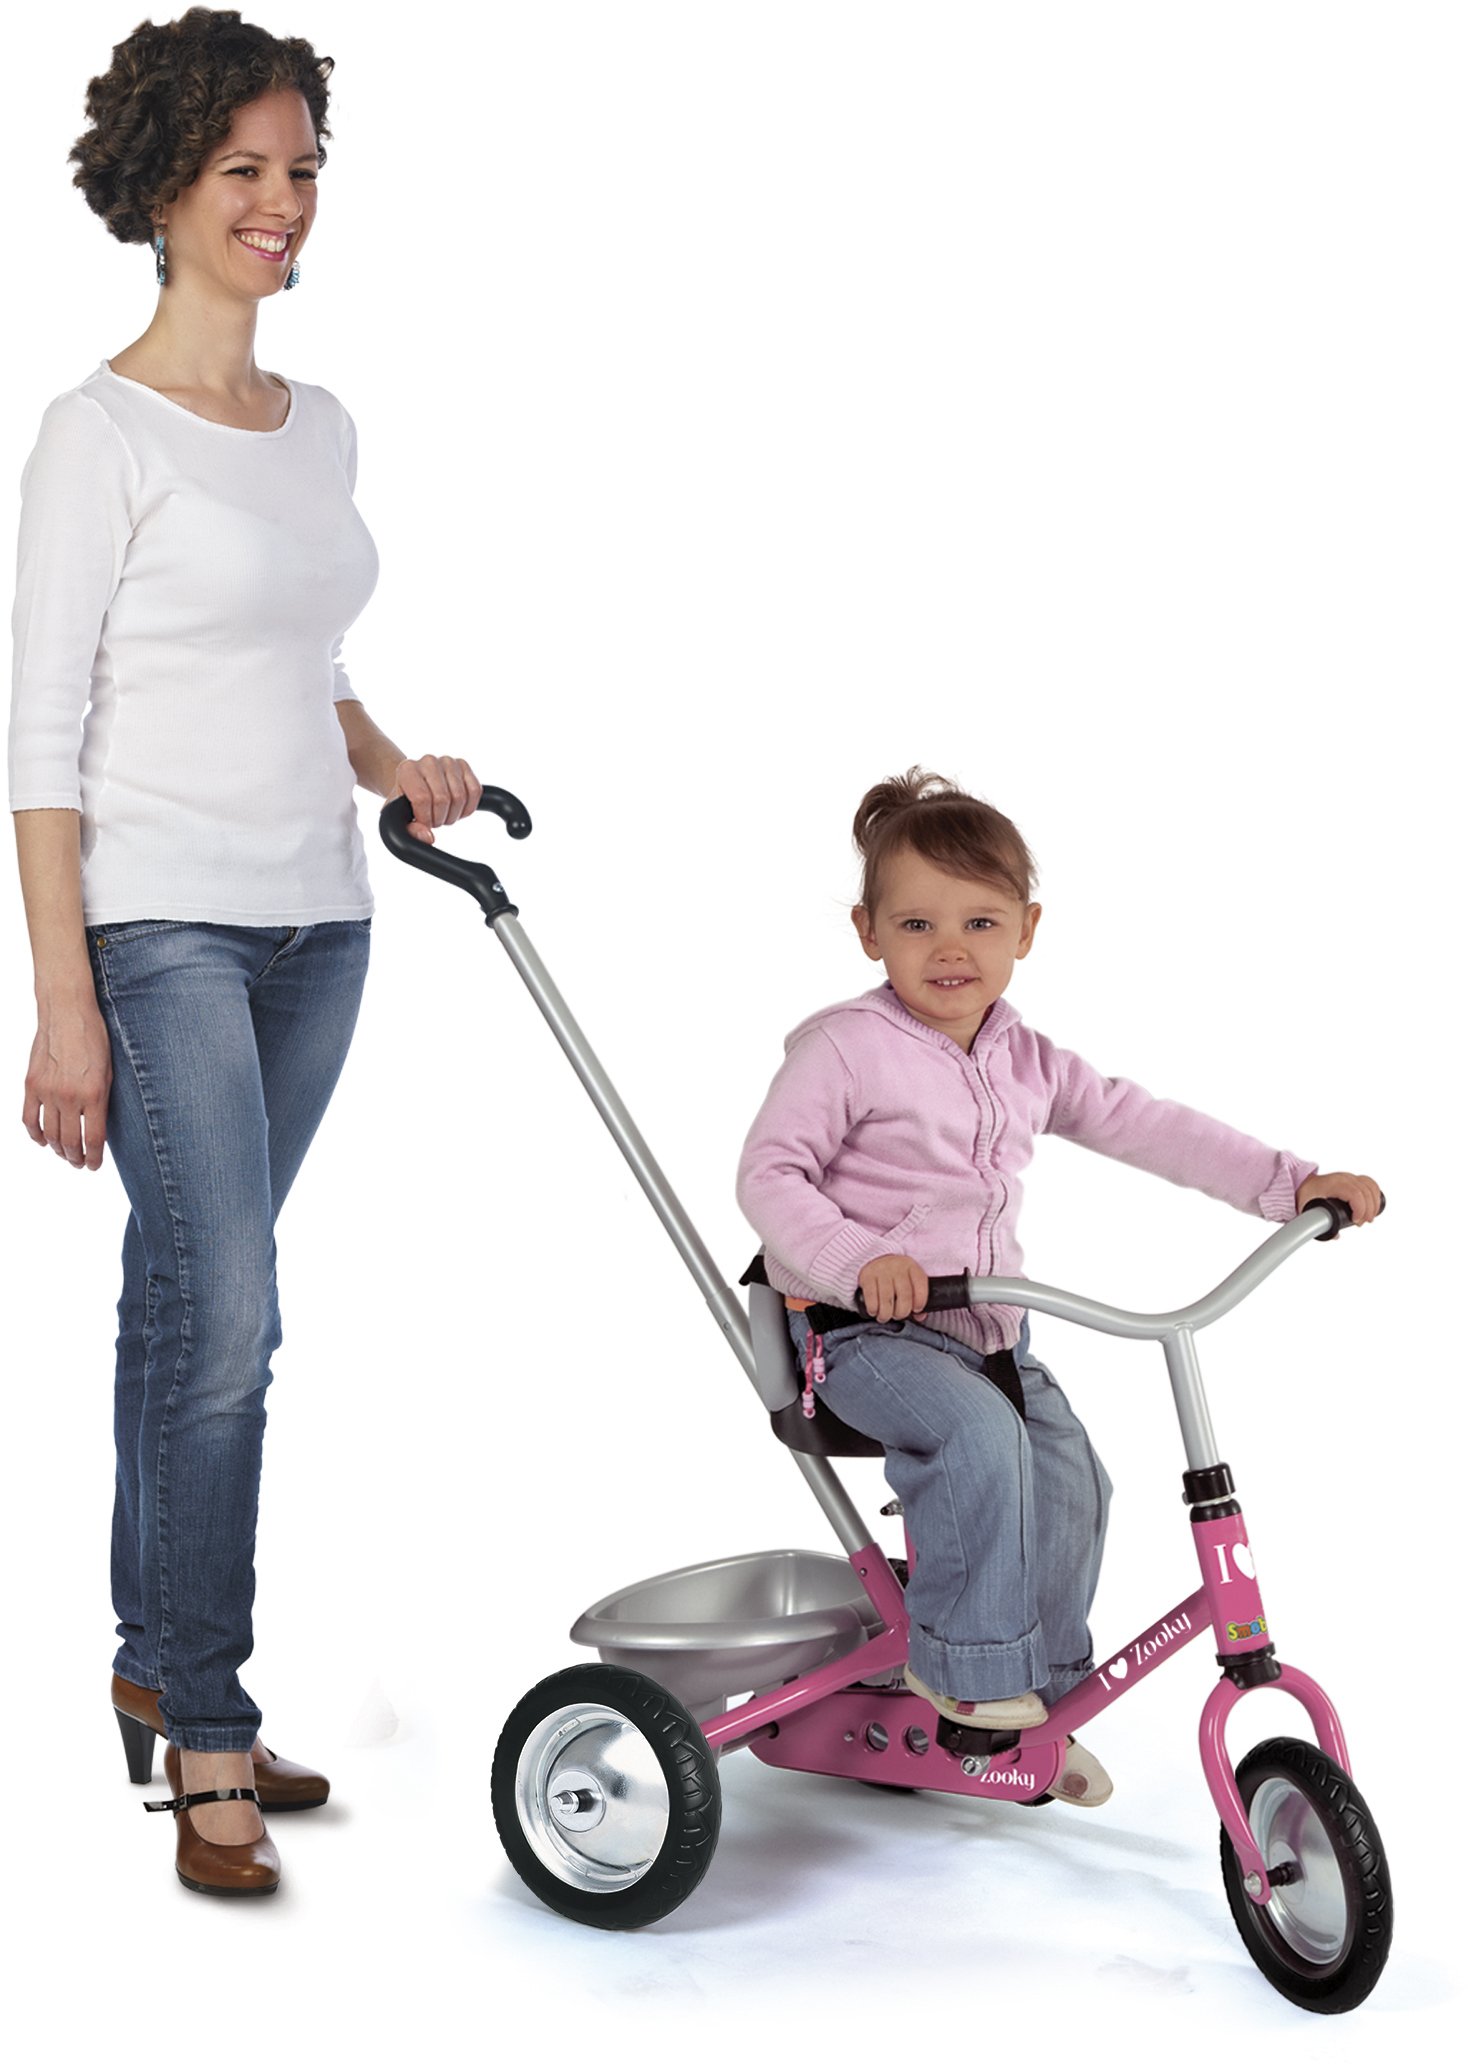 Трехколесный велосипед Smoby Toys Zooky с багажником, розовый (454016) - фото 2